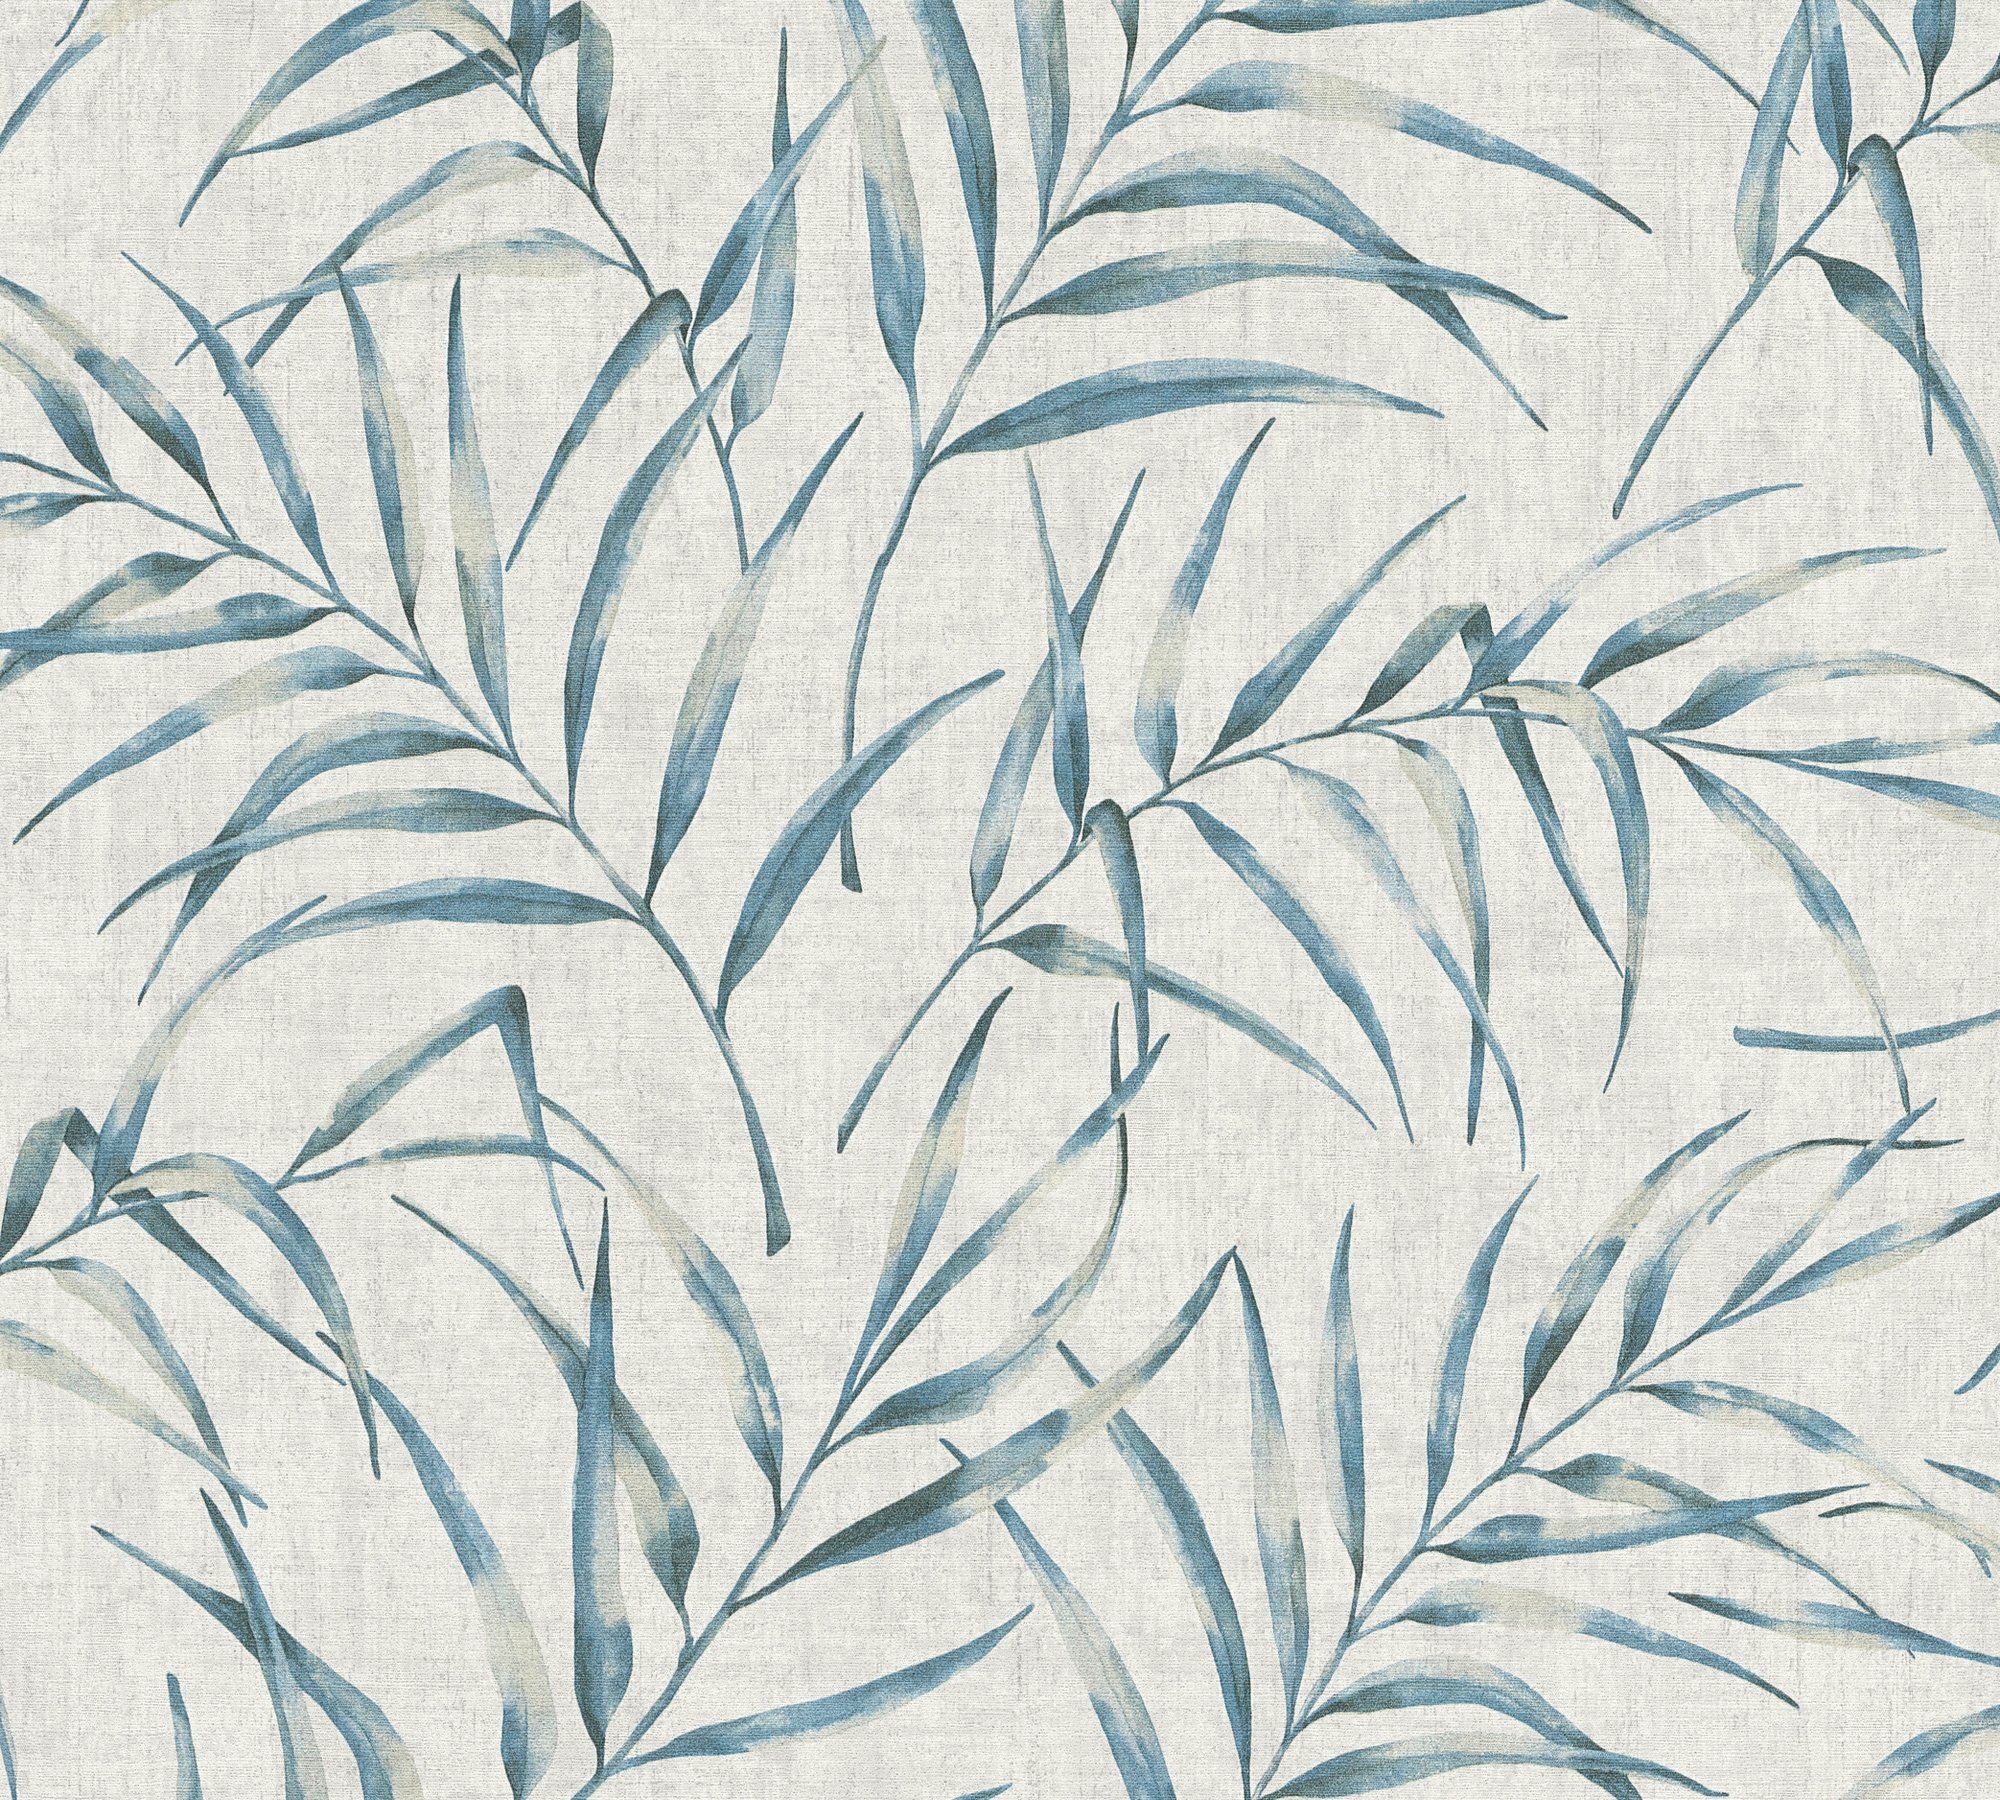 in floral, mit Greenery grau/blau Tapete Vliestapete Optik, Palmen Dschungel A.S. Palmenprint Dschungeltapete Création